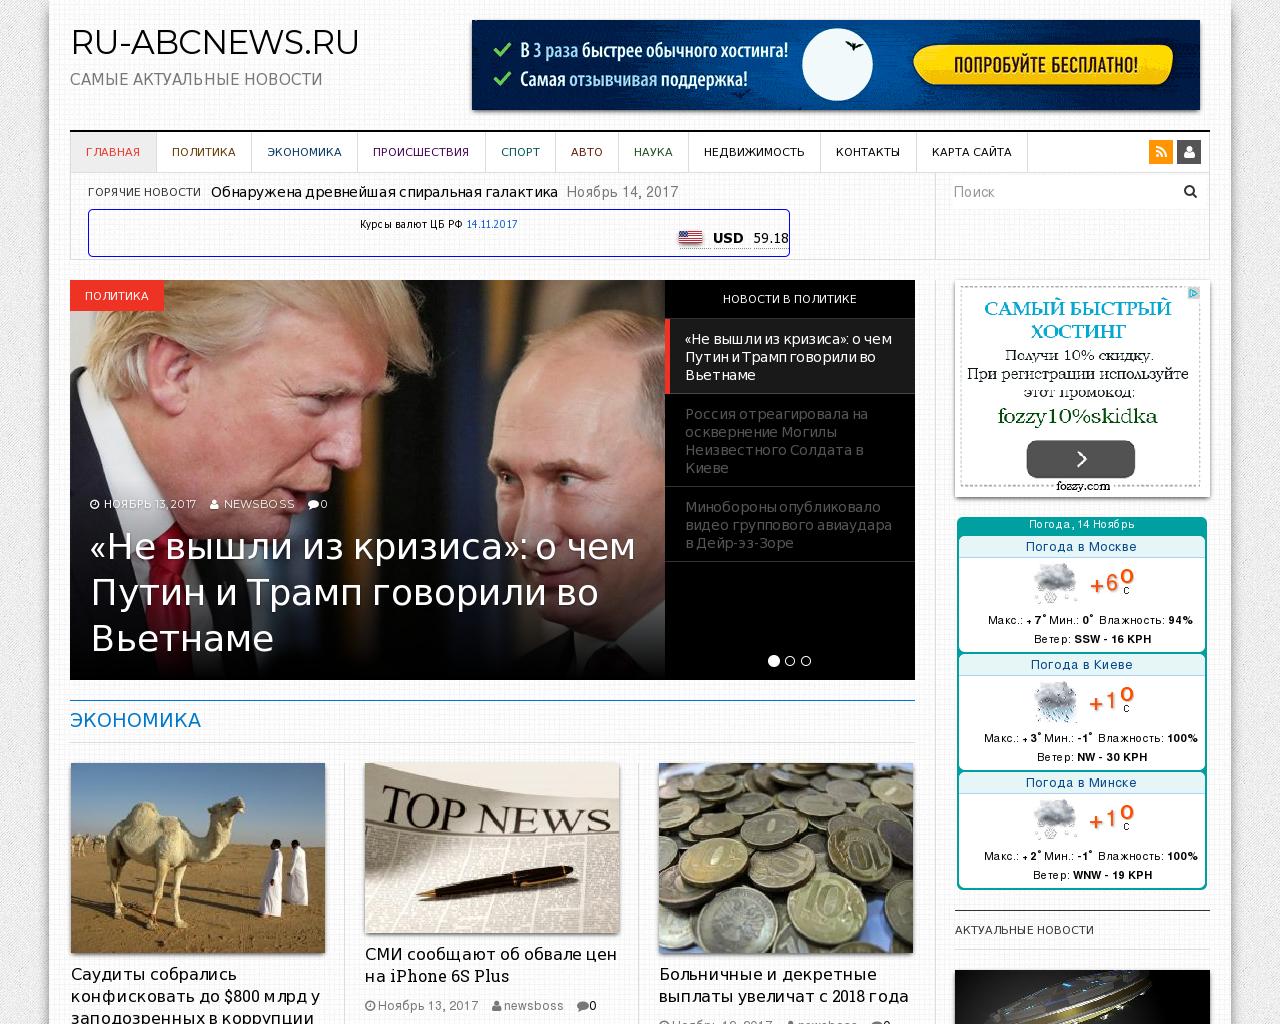 Изображение сайта ru-abcnews.ru в разрешении 1280x1024